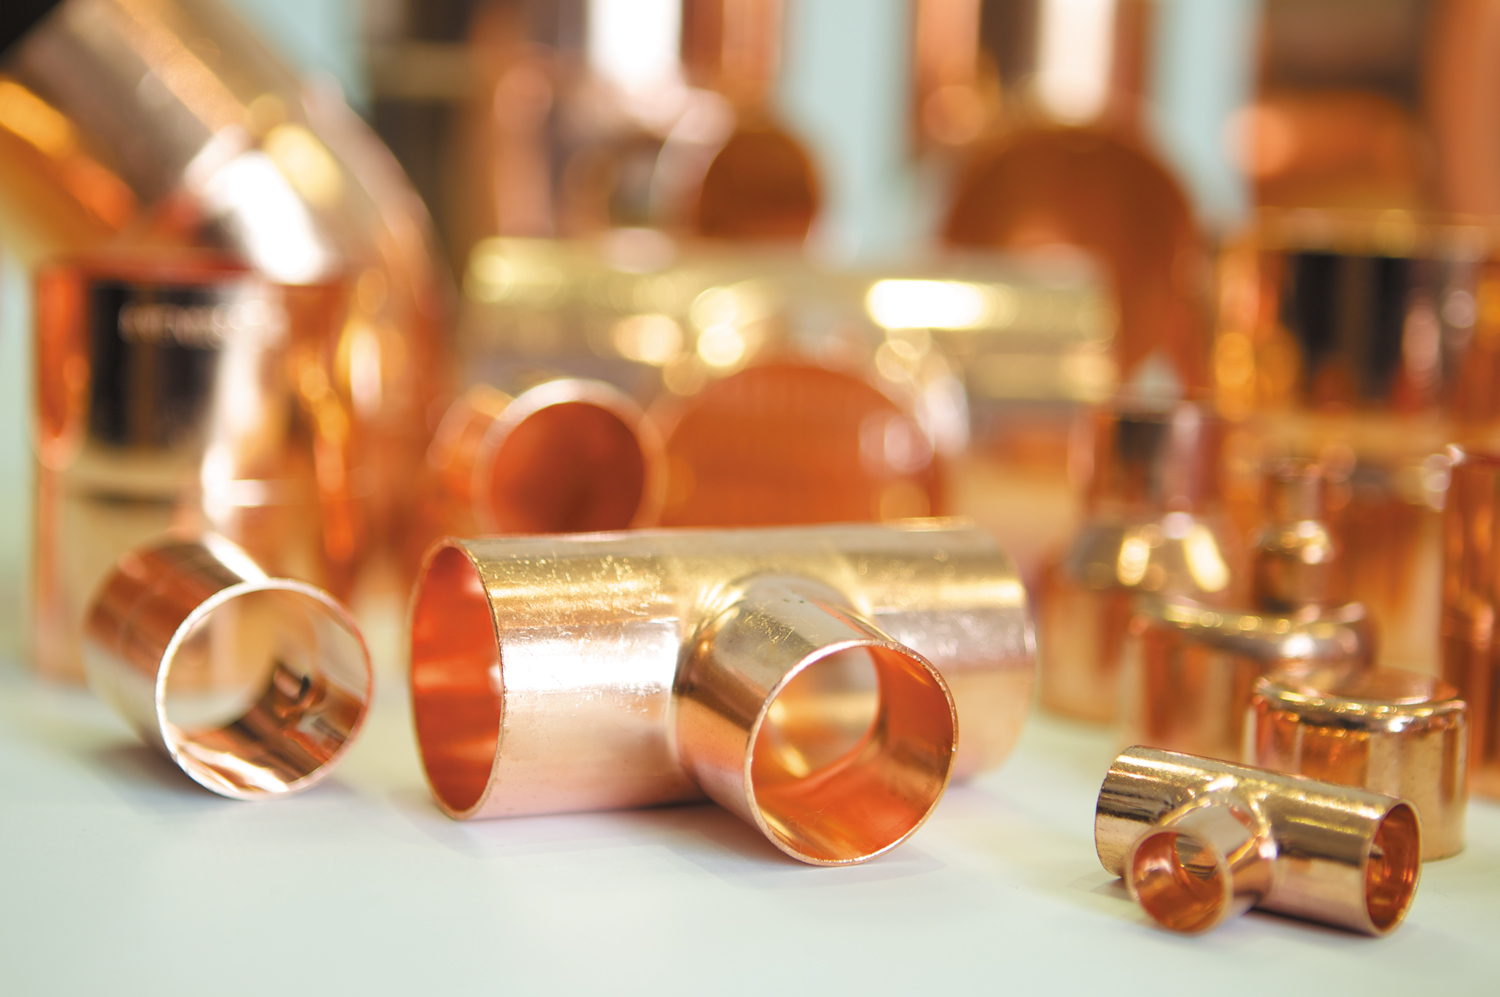 Copper connectors